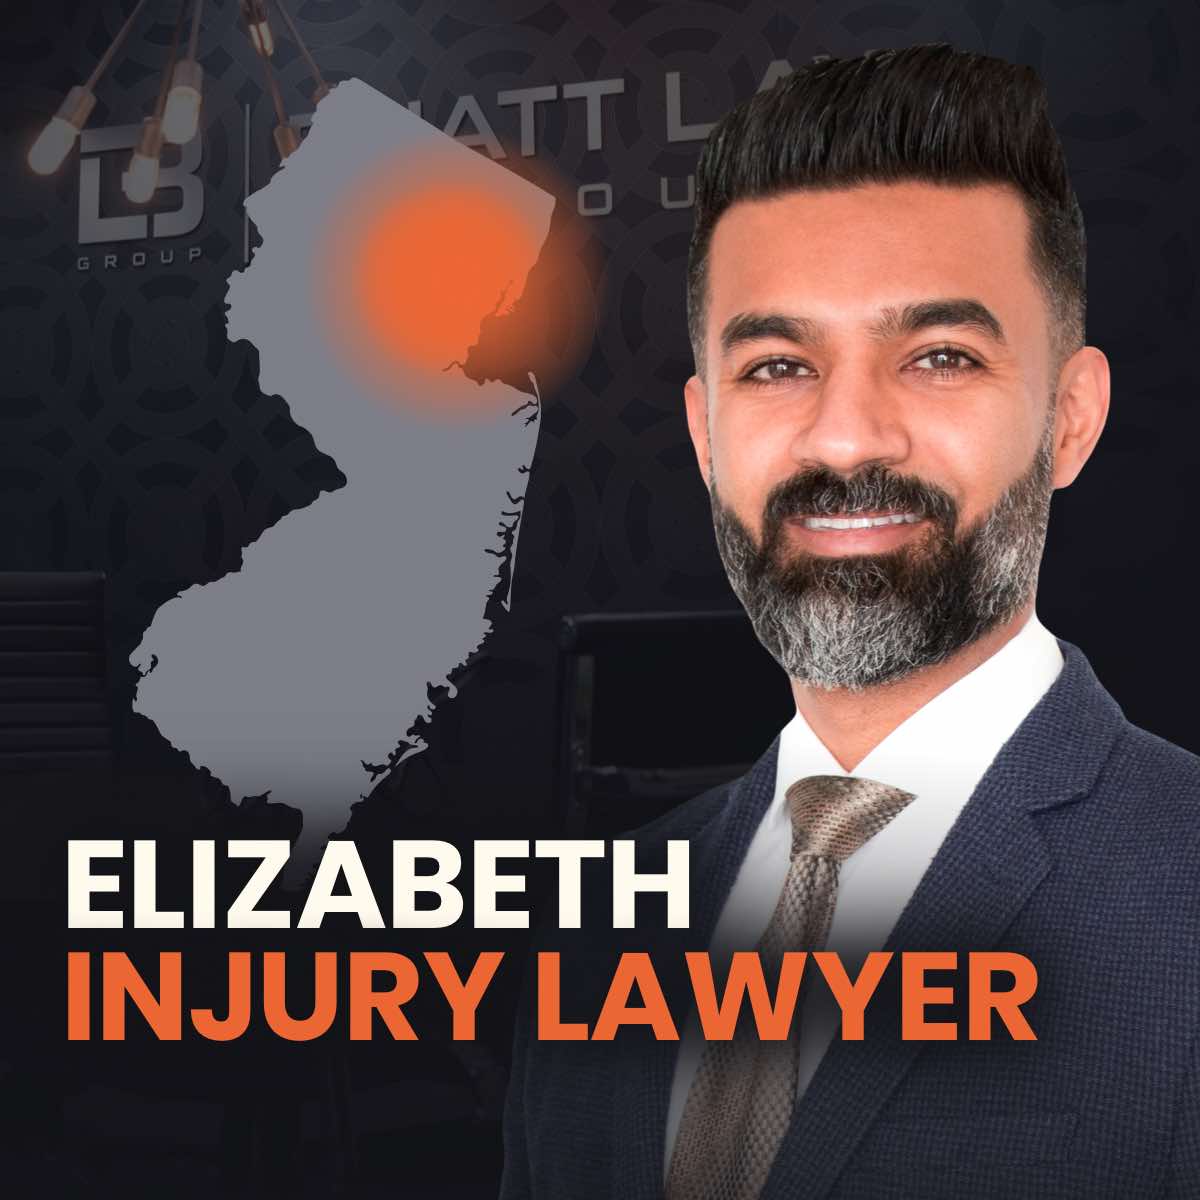 Elizabeth Injury Lawyer